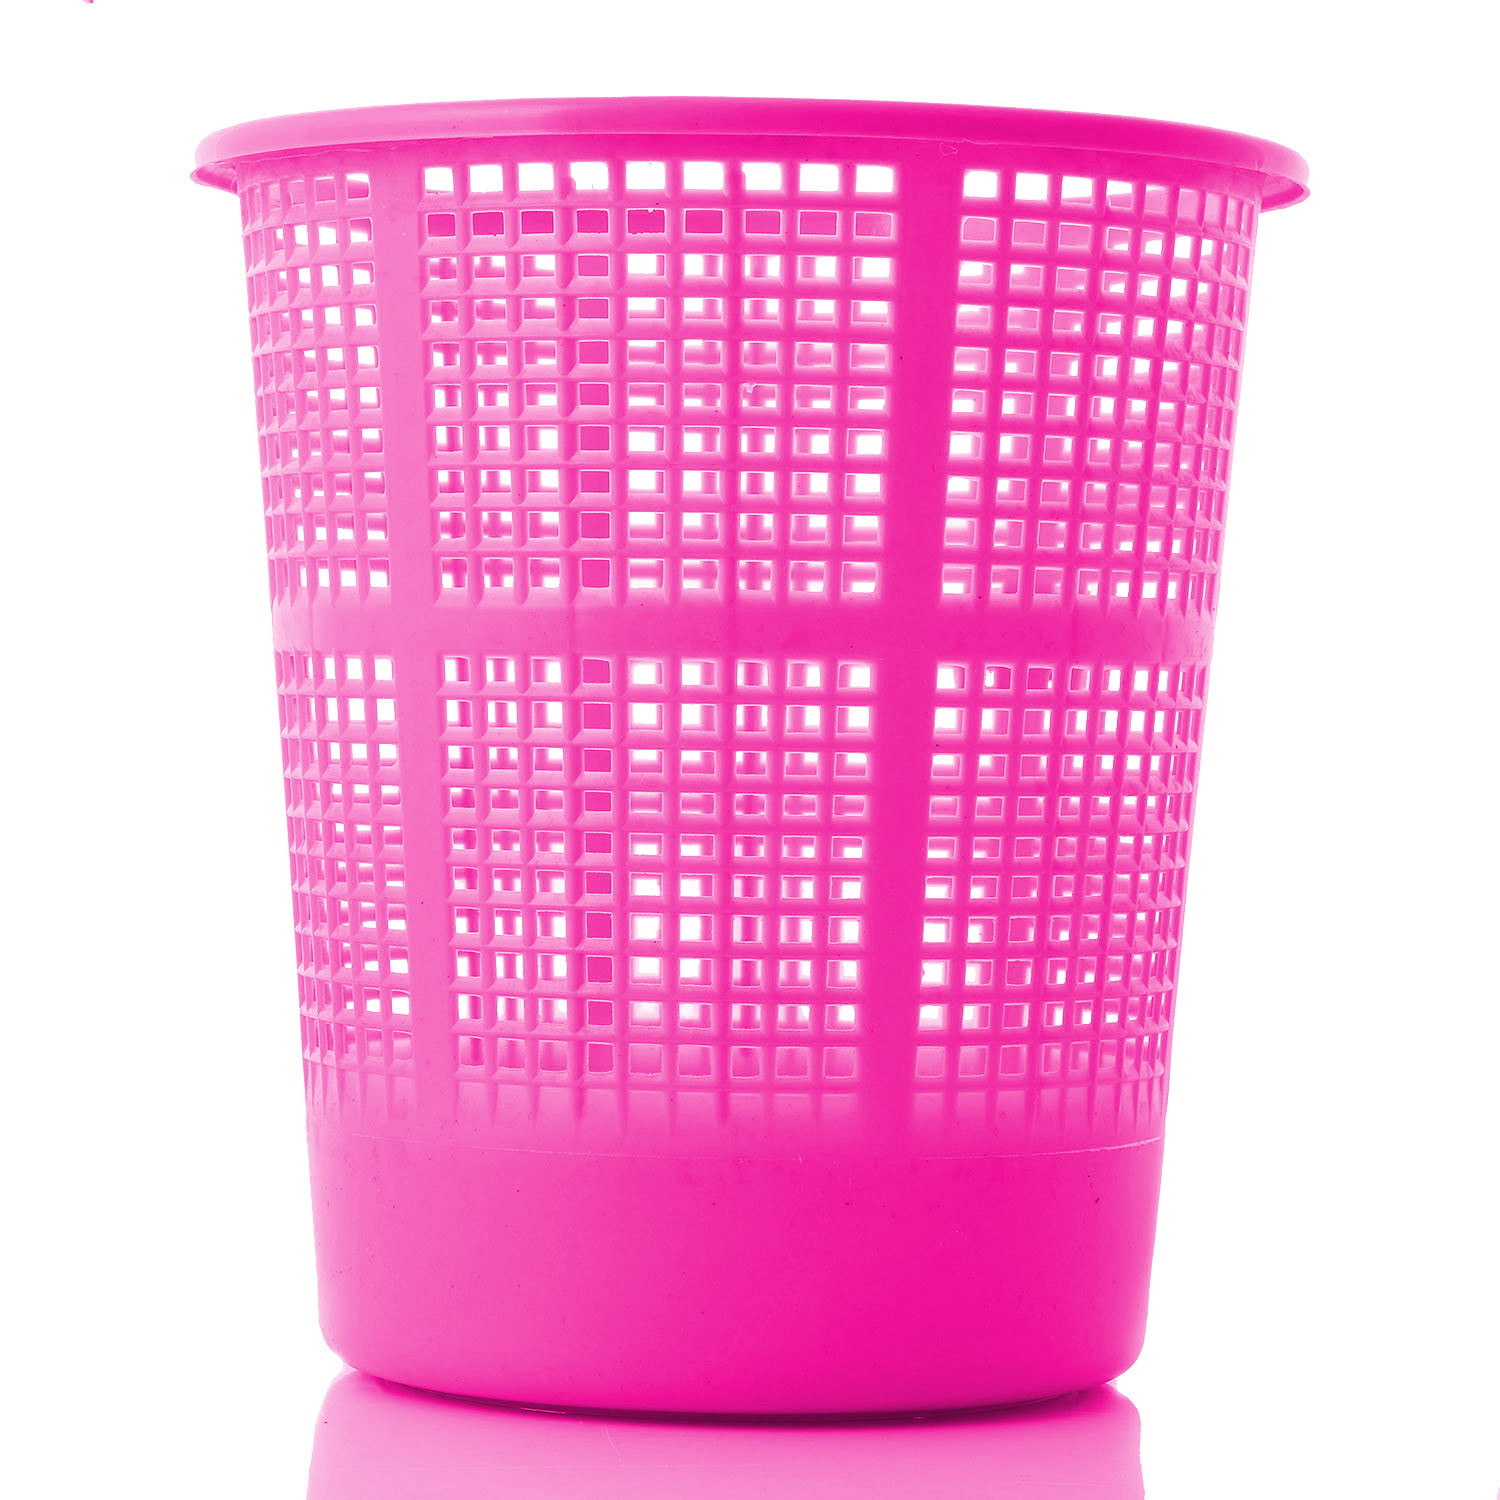 Kuber Industries Plastic Mesh Dustbin Garbage Bin for Office use, School, Bedroom,Kids Room, Home, Multi Purpose,5 Liters (Green & Red & Pink)-KUBMART290